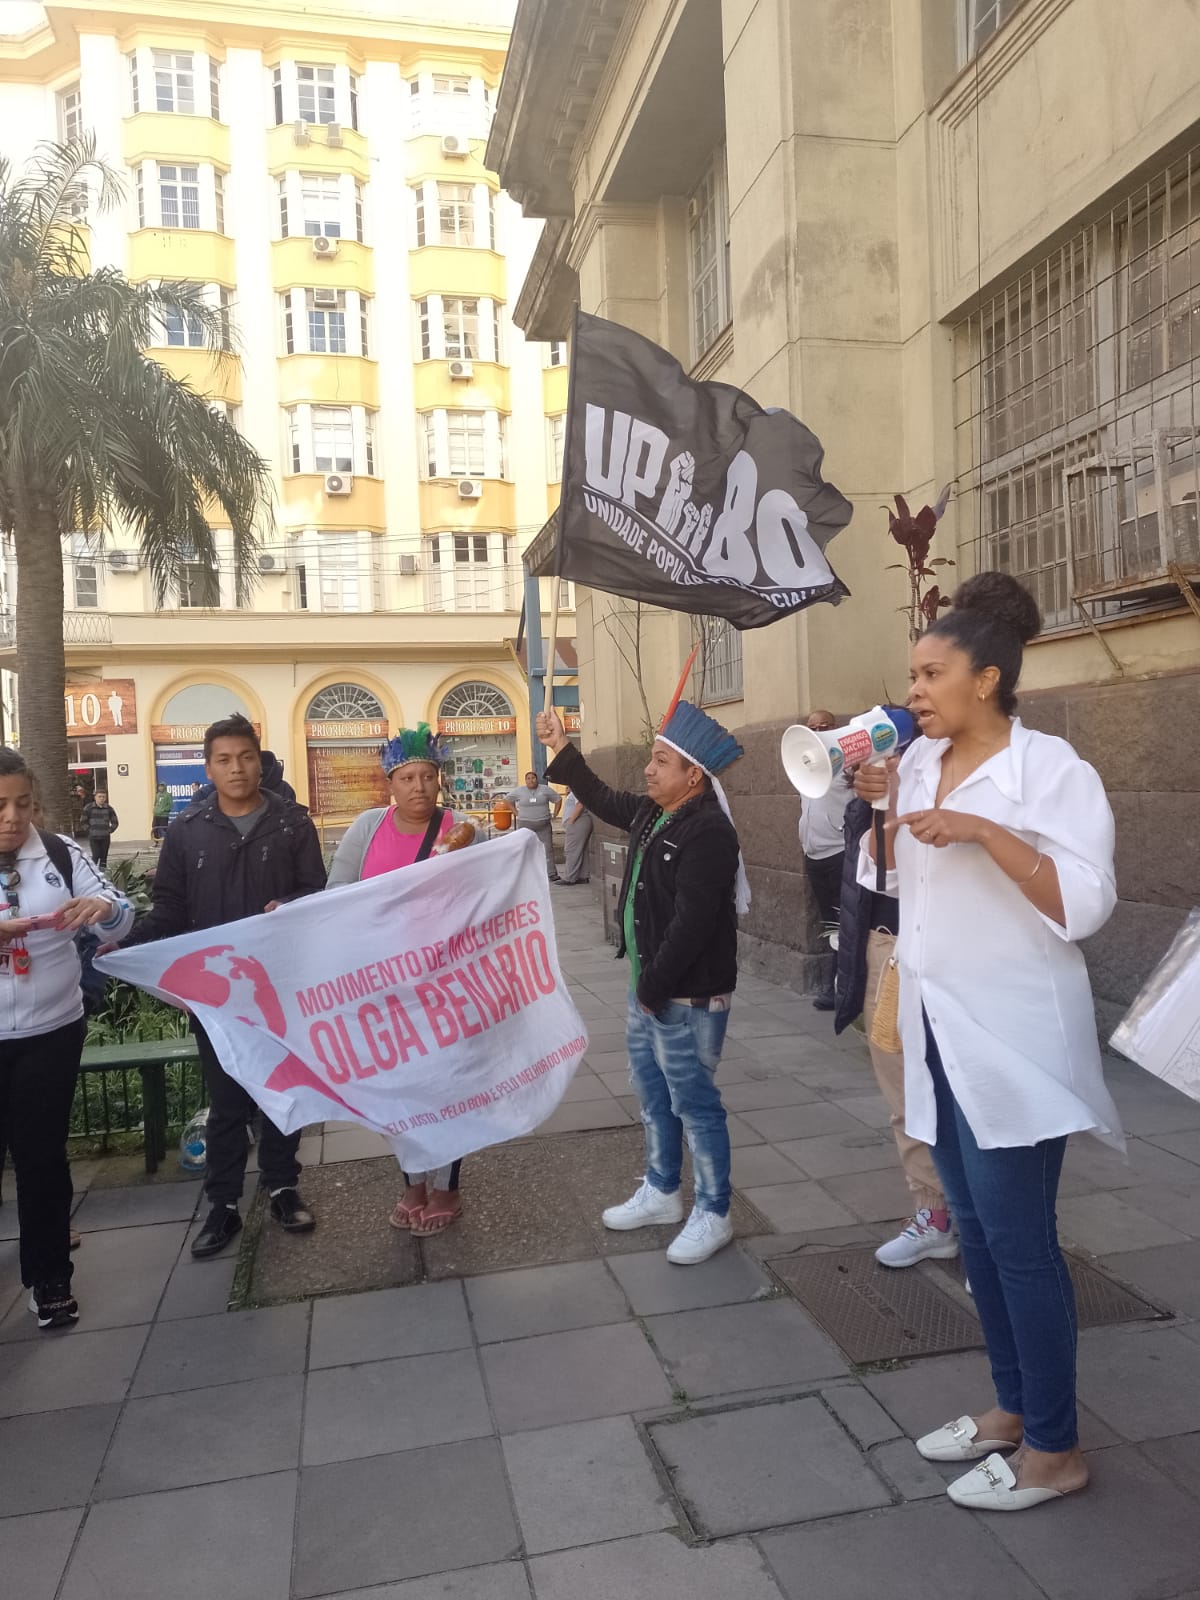 Movimento indígena e Unidade Popular apoiaram a luta. Fotos: Kaê Fonseca e Luiza Castro/Sul21